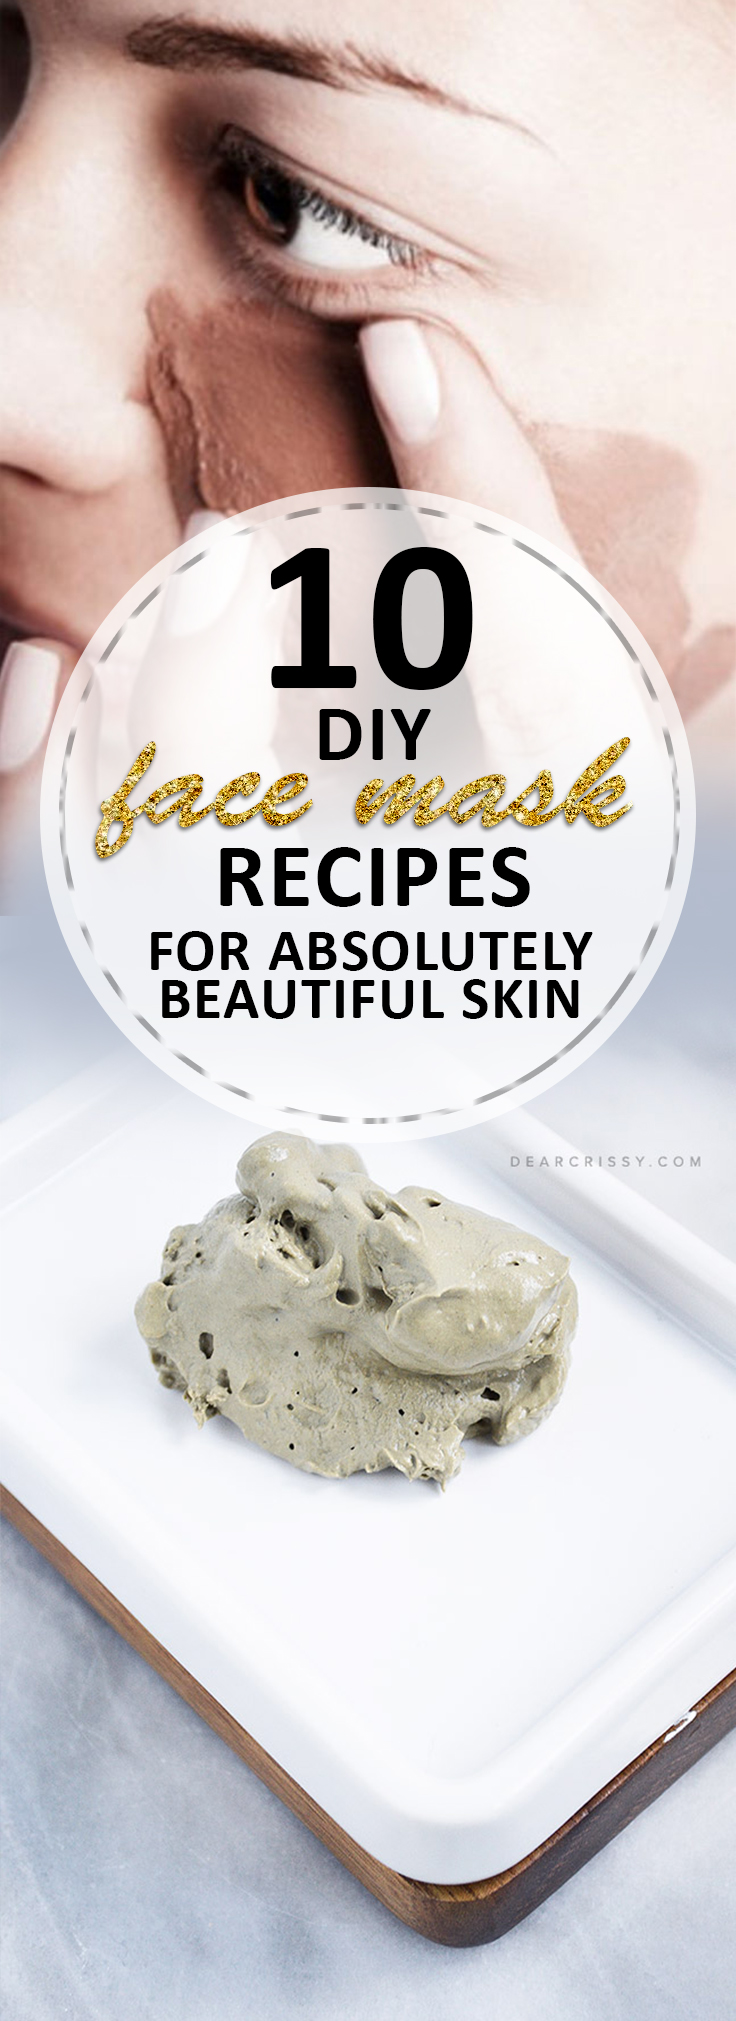 skin care, DIY makeup, natural beauty, popular pin, makeup tips, skin care hacks, skin care tips and tricks. DIY Beauty Face Mask